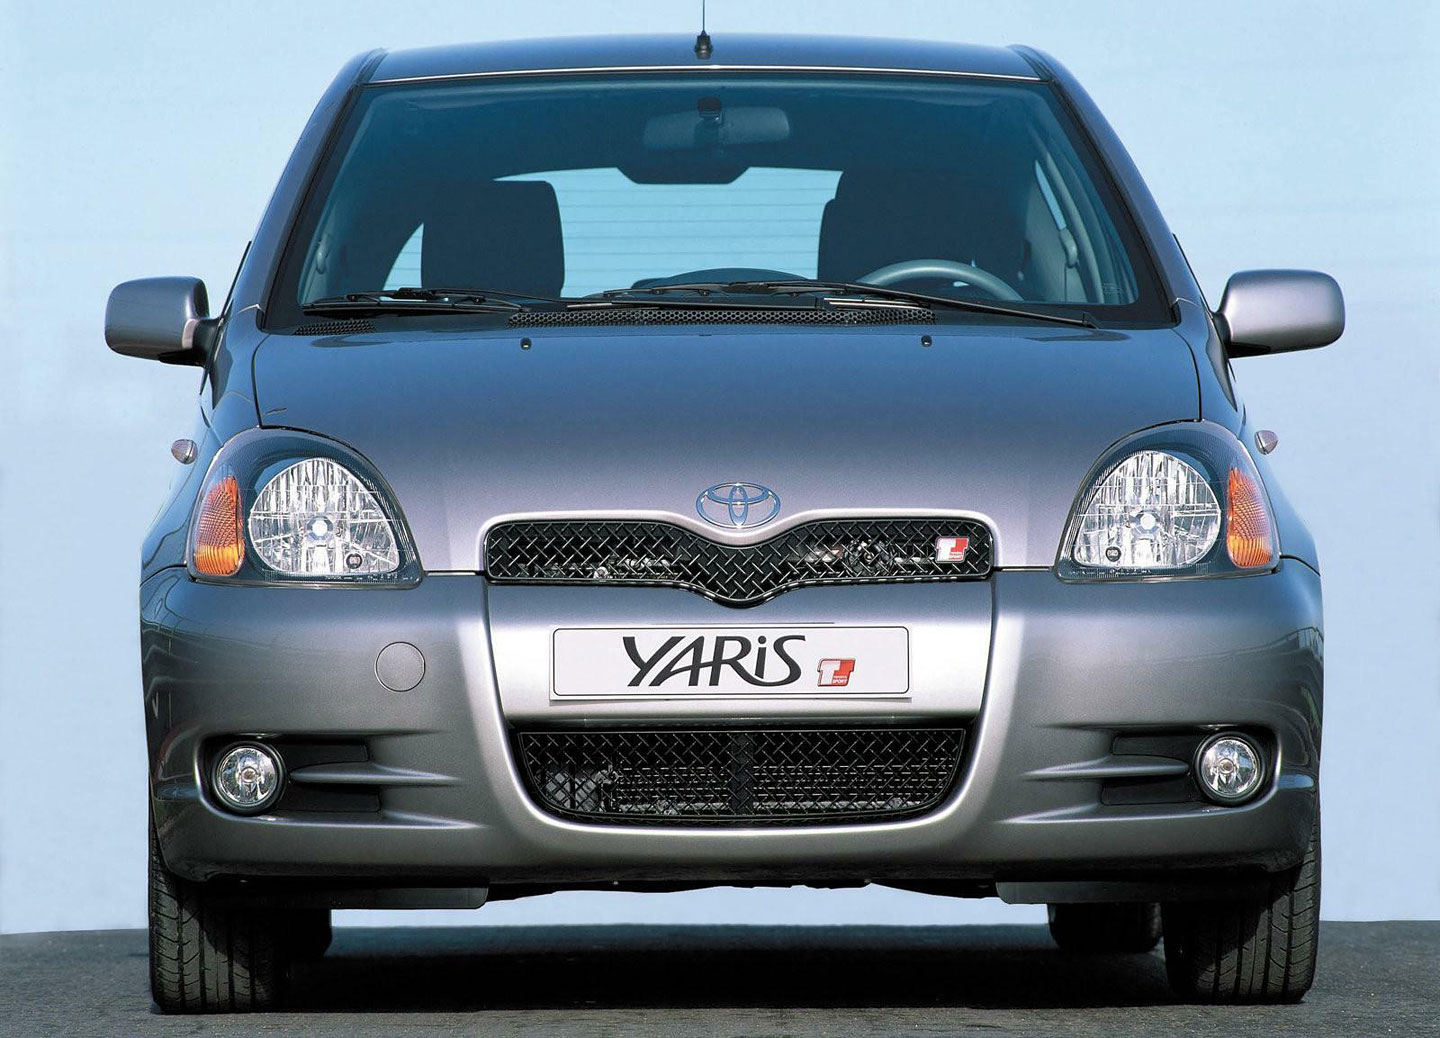 Evropské Automobily roku Toyota Yaris (2000) auto.cz